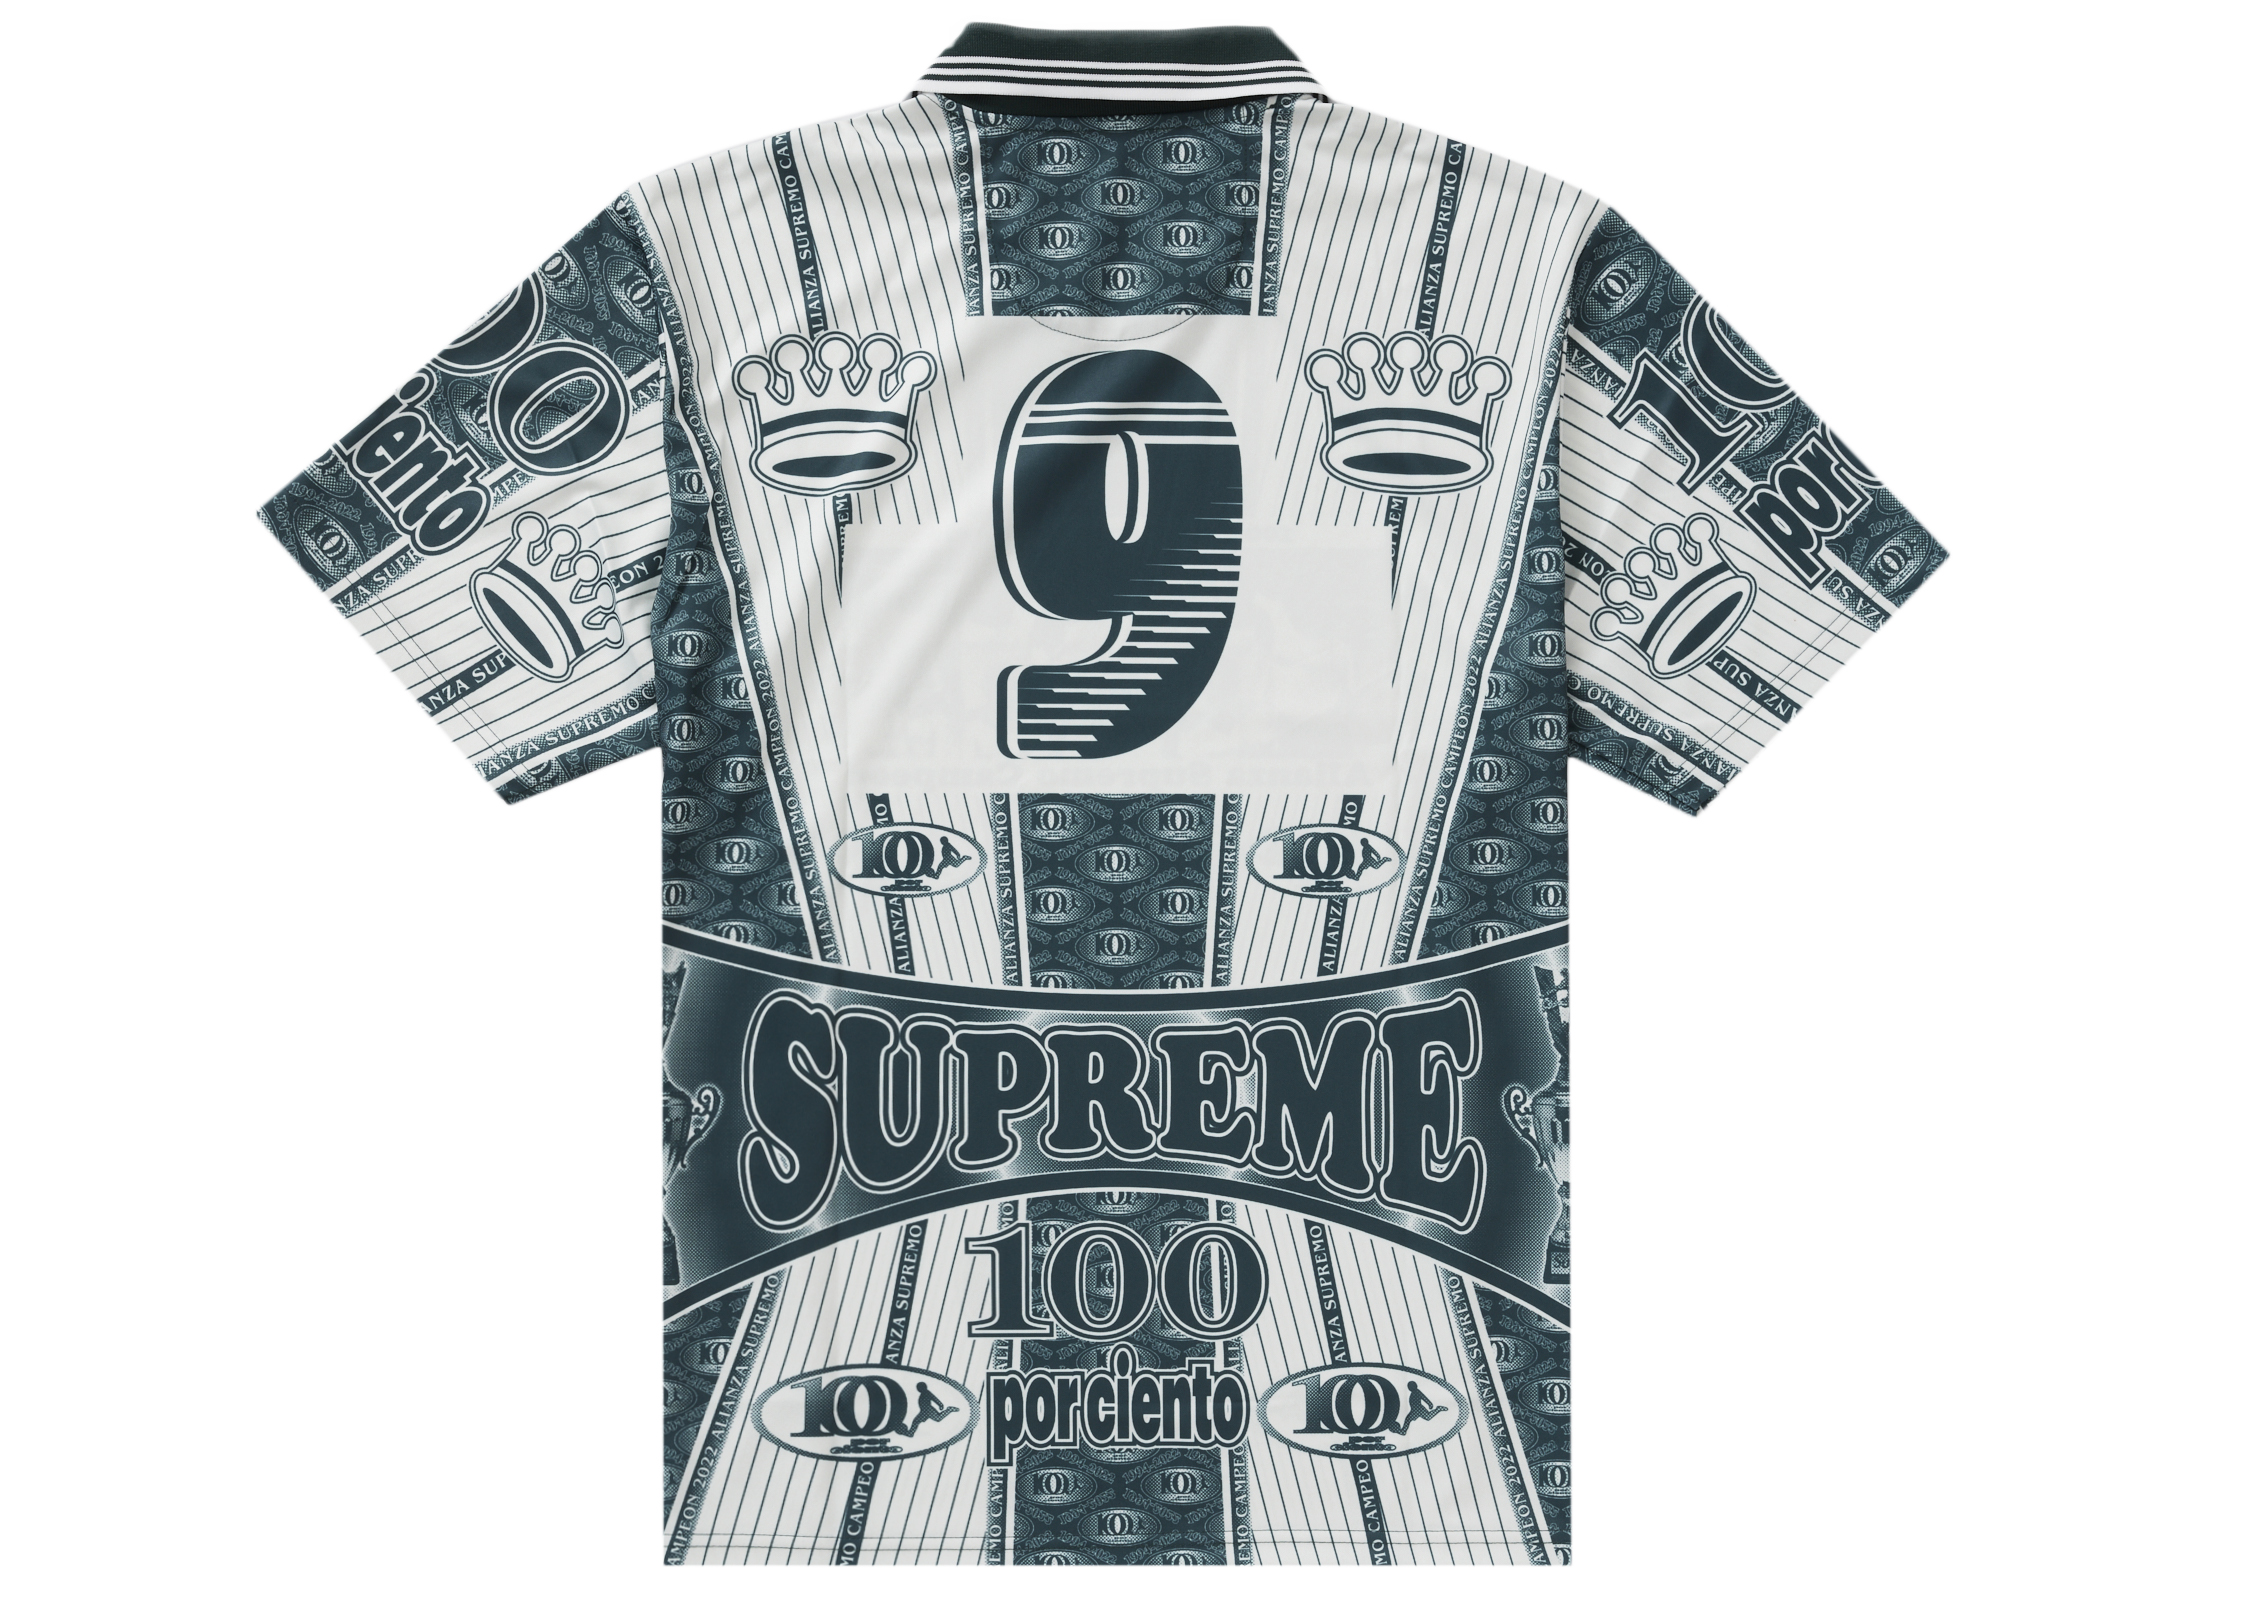 7,000円supreme por ciento soccer jersey